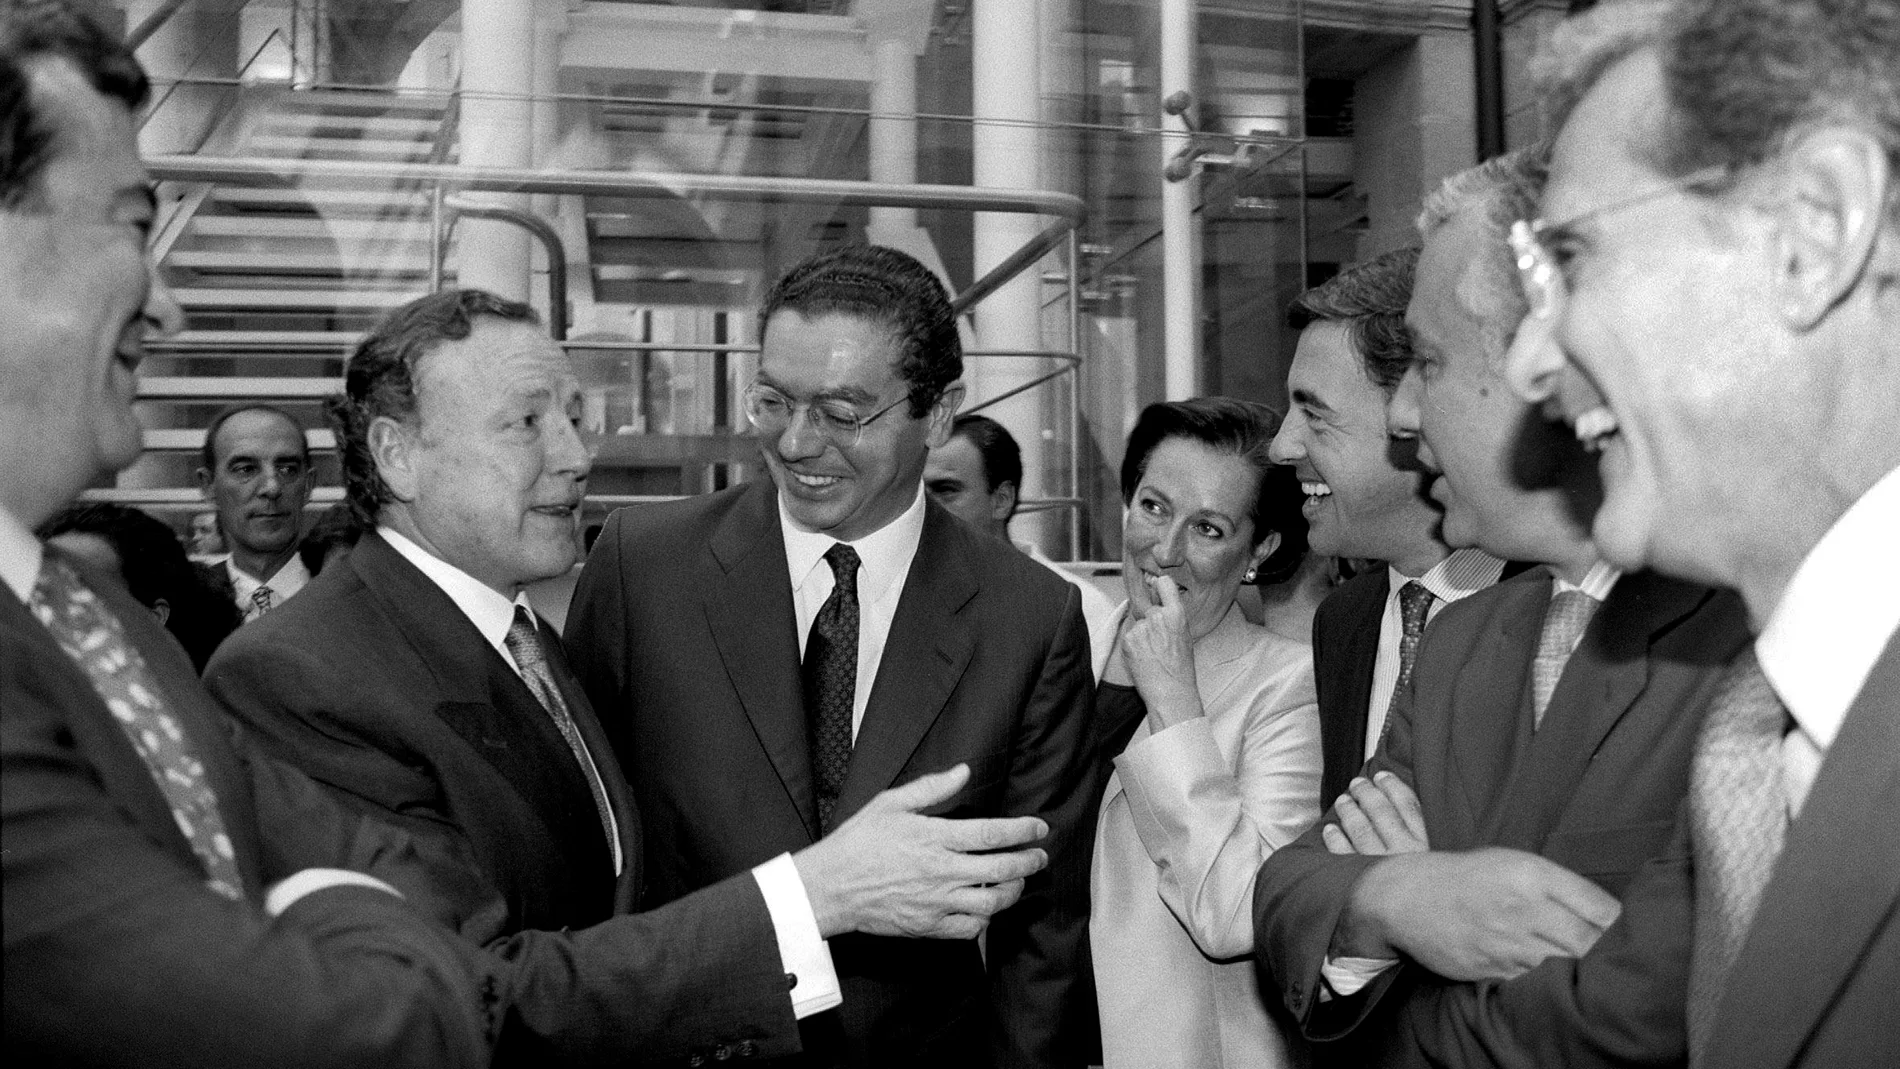 La toma de posesión de Gallardón del año 1999, en la que aparece acompañado de Álvarez del Manzano y otros destacados dirigentes del PP